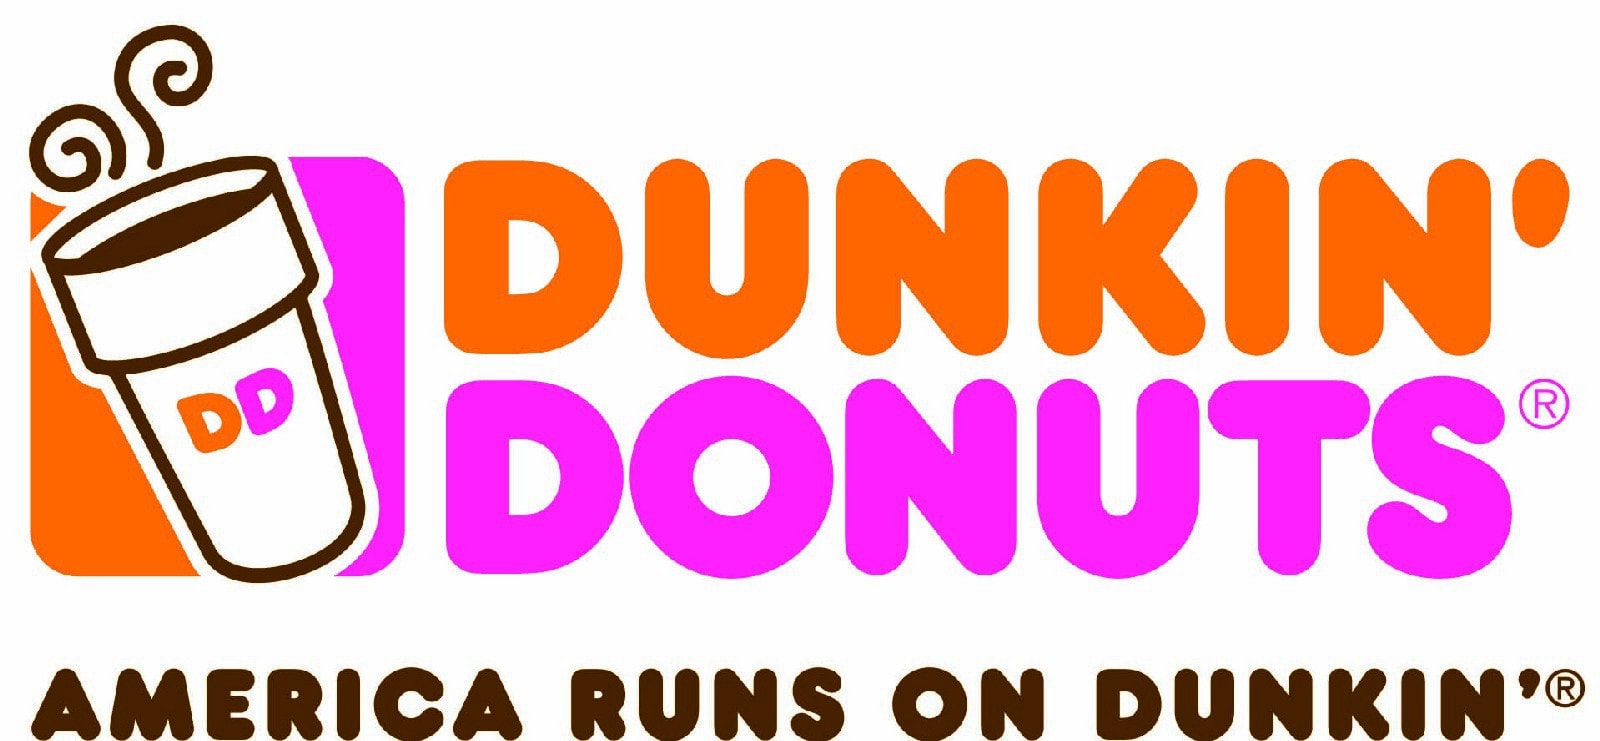 Dunkin' Donuts – America Runs on Dunkin'